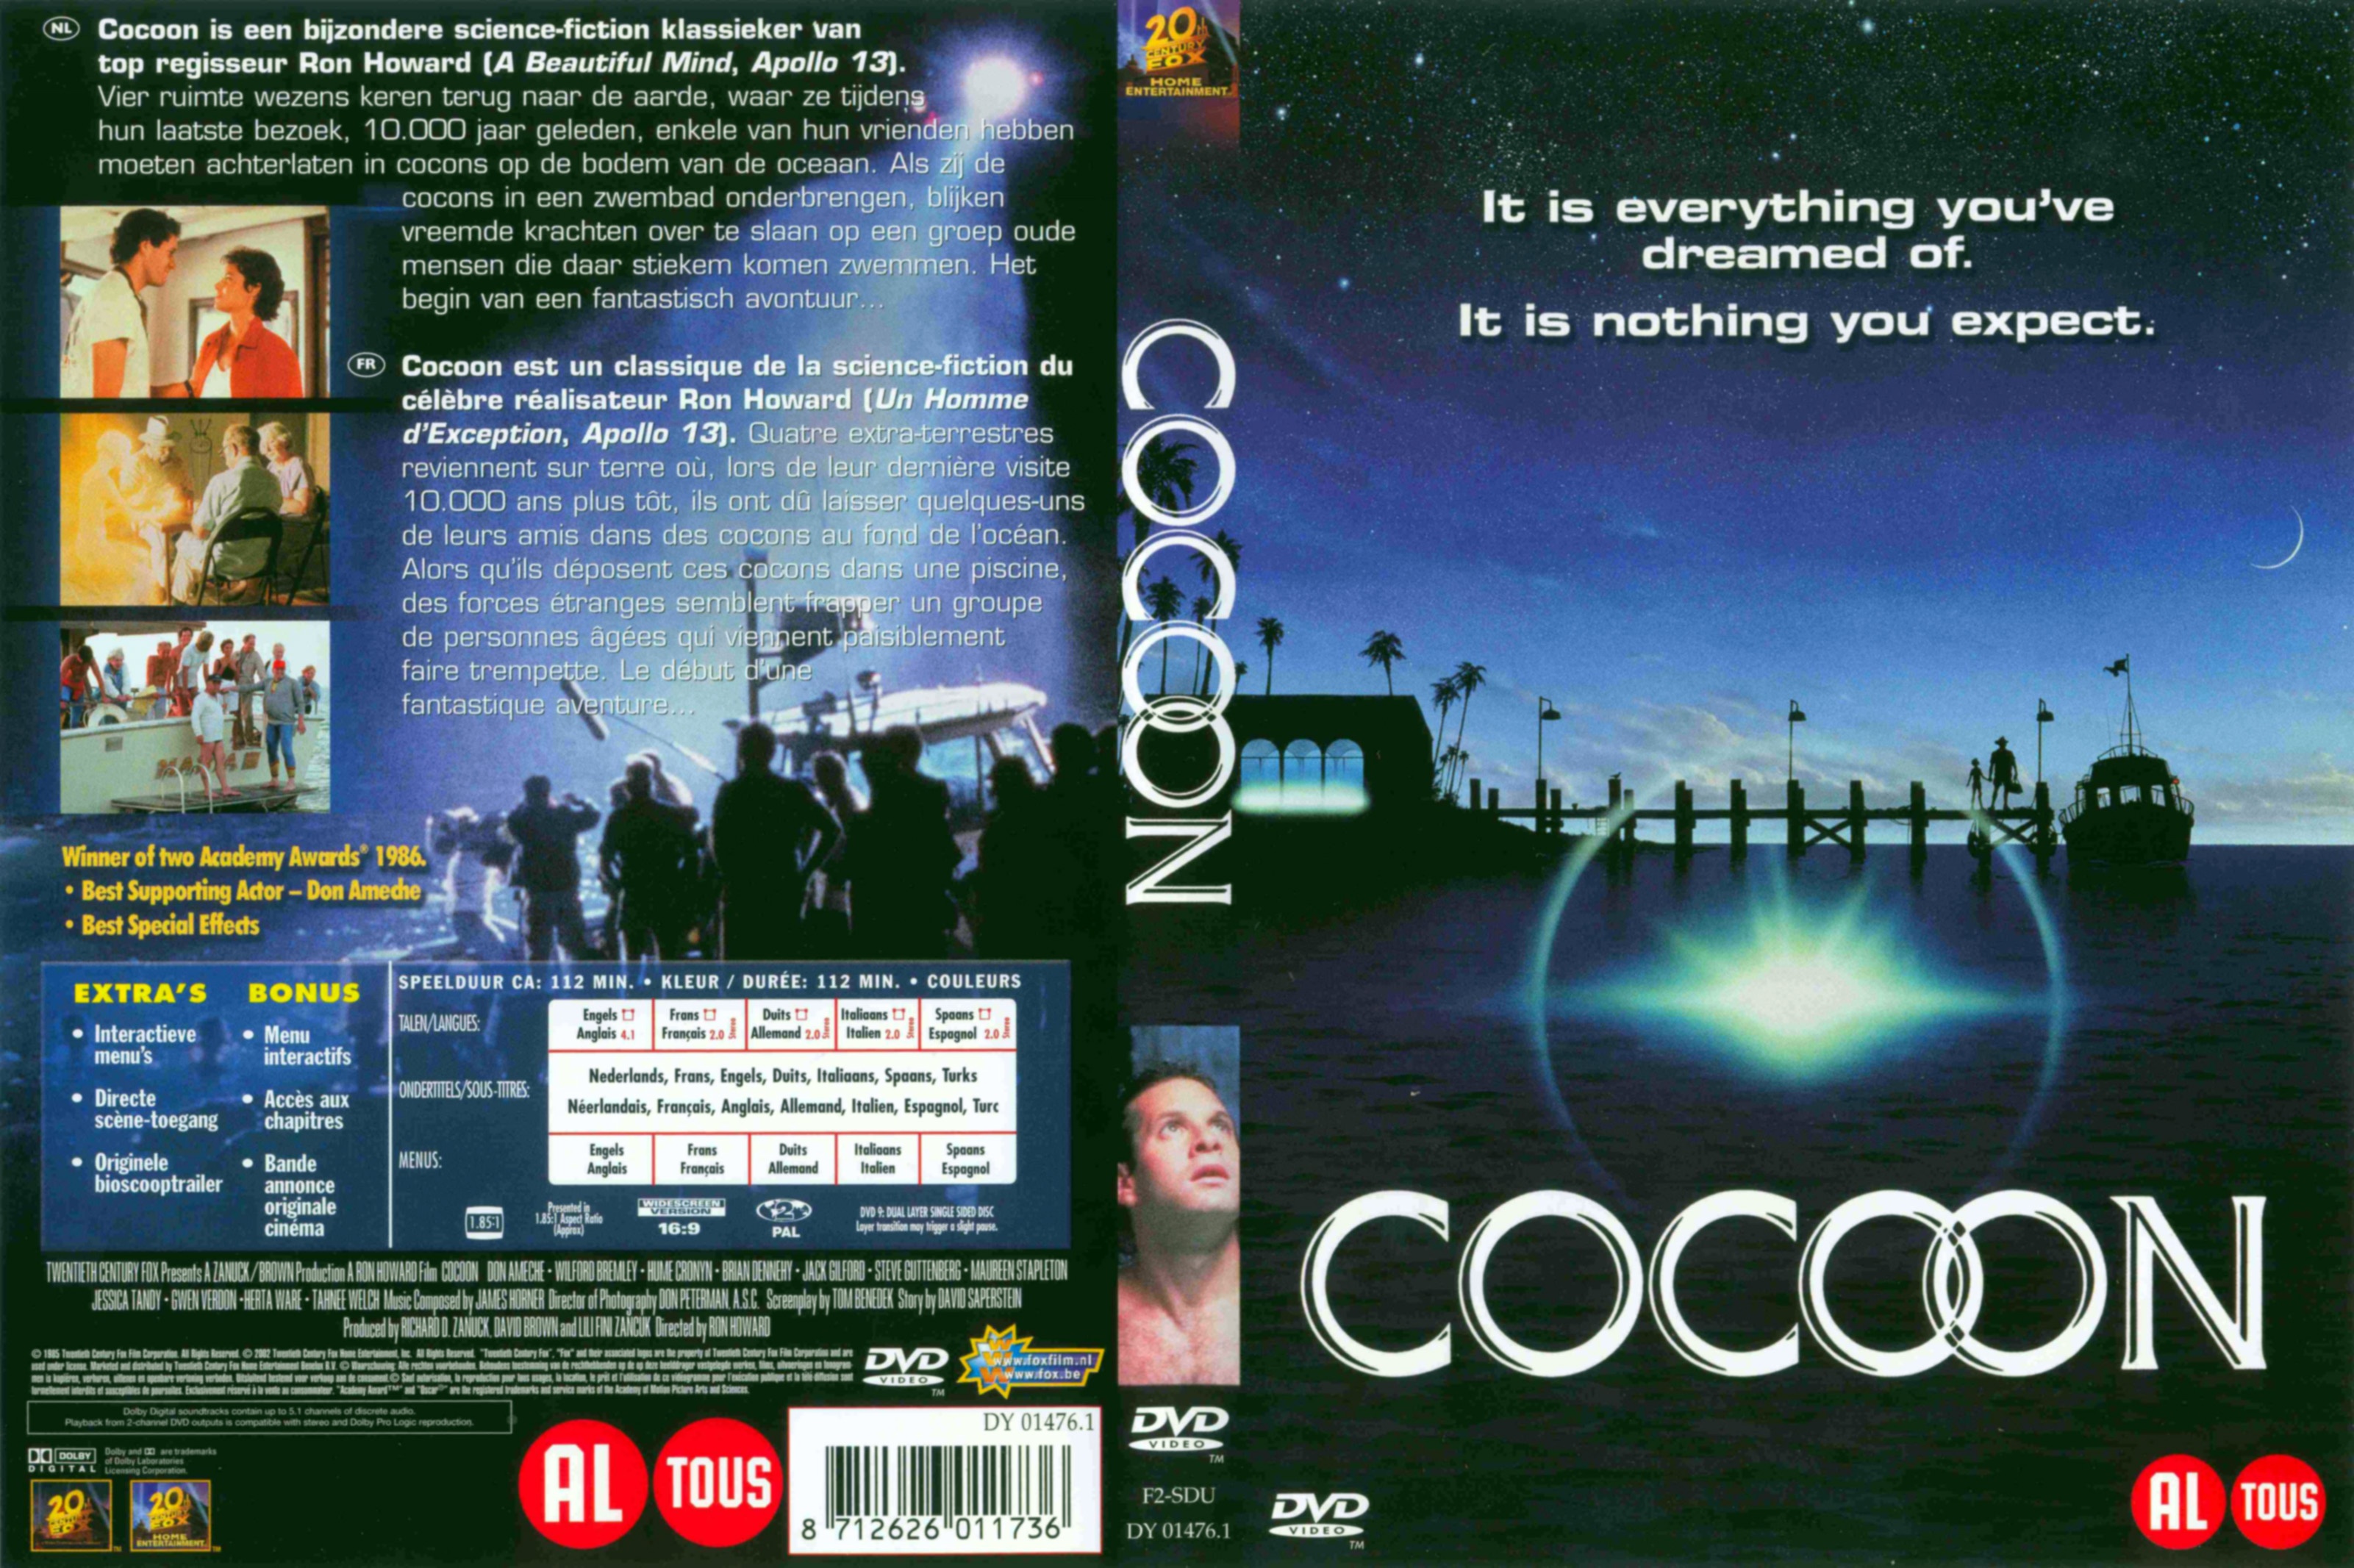 Jaquette DVD Cocoon v3